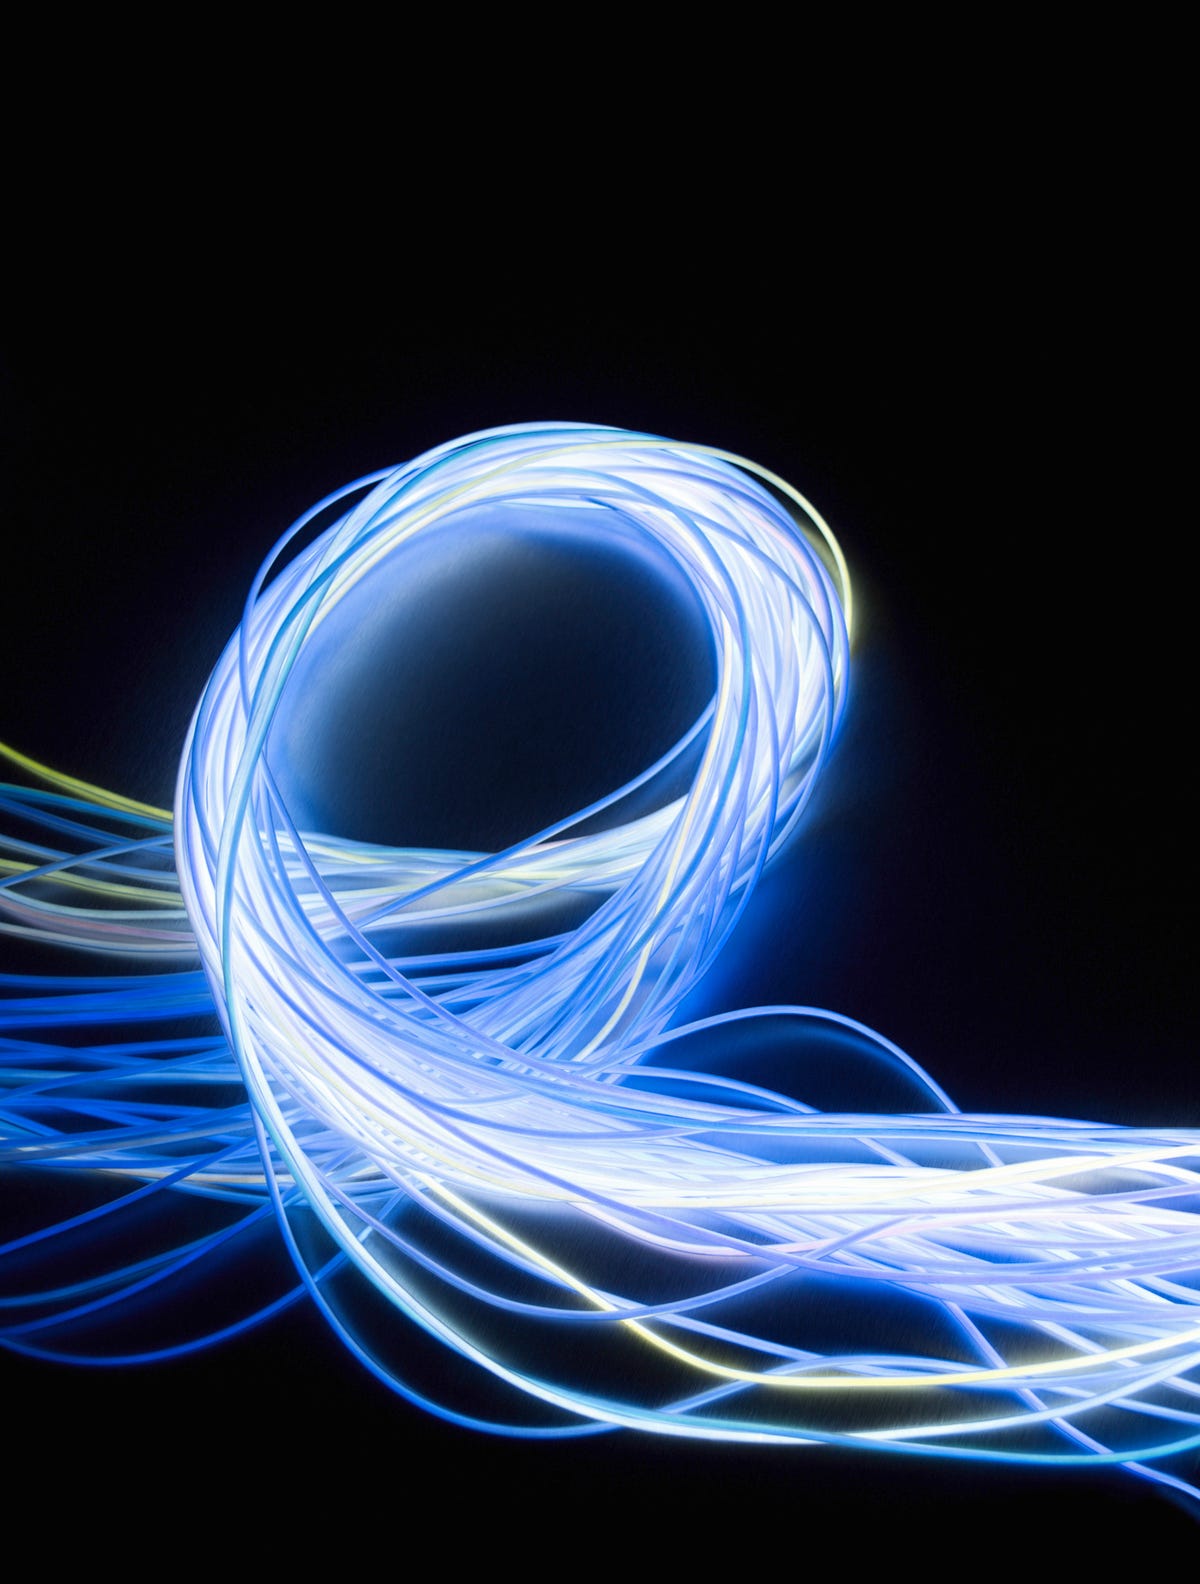 Loop bundle of fiber optic wires against black background